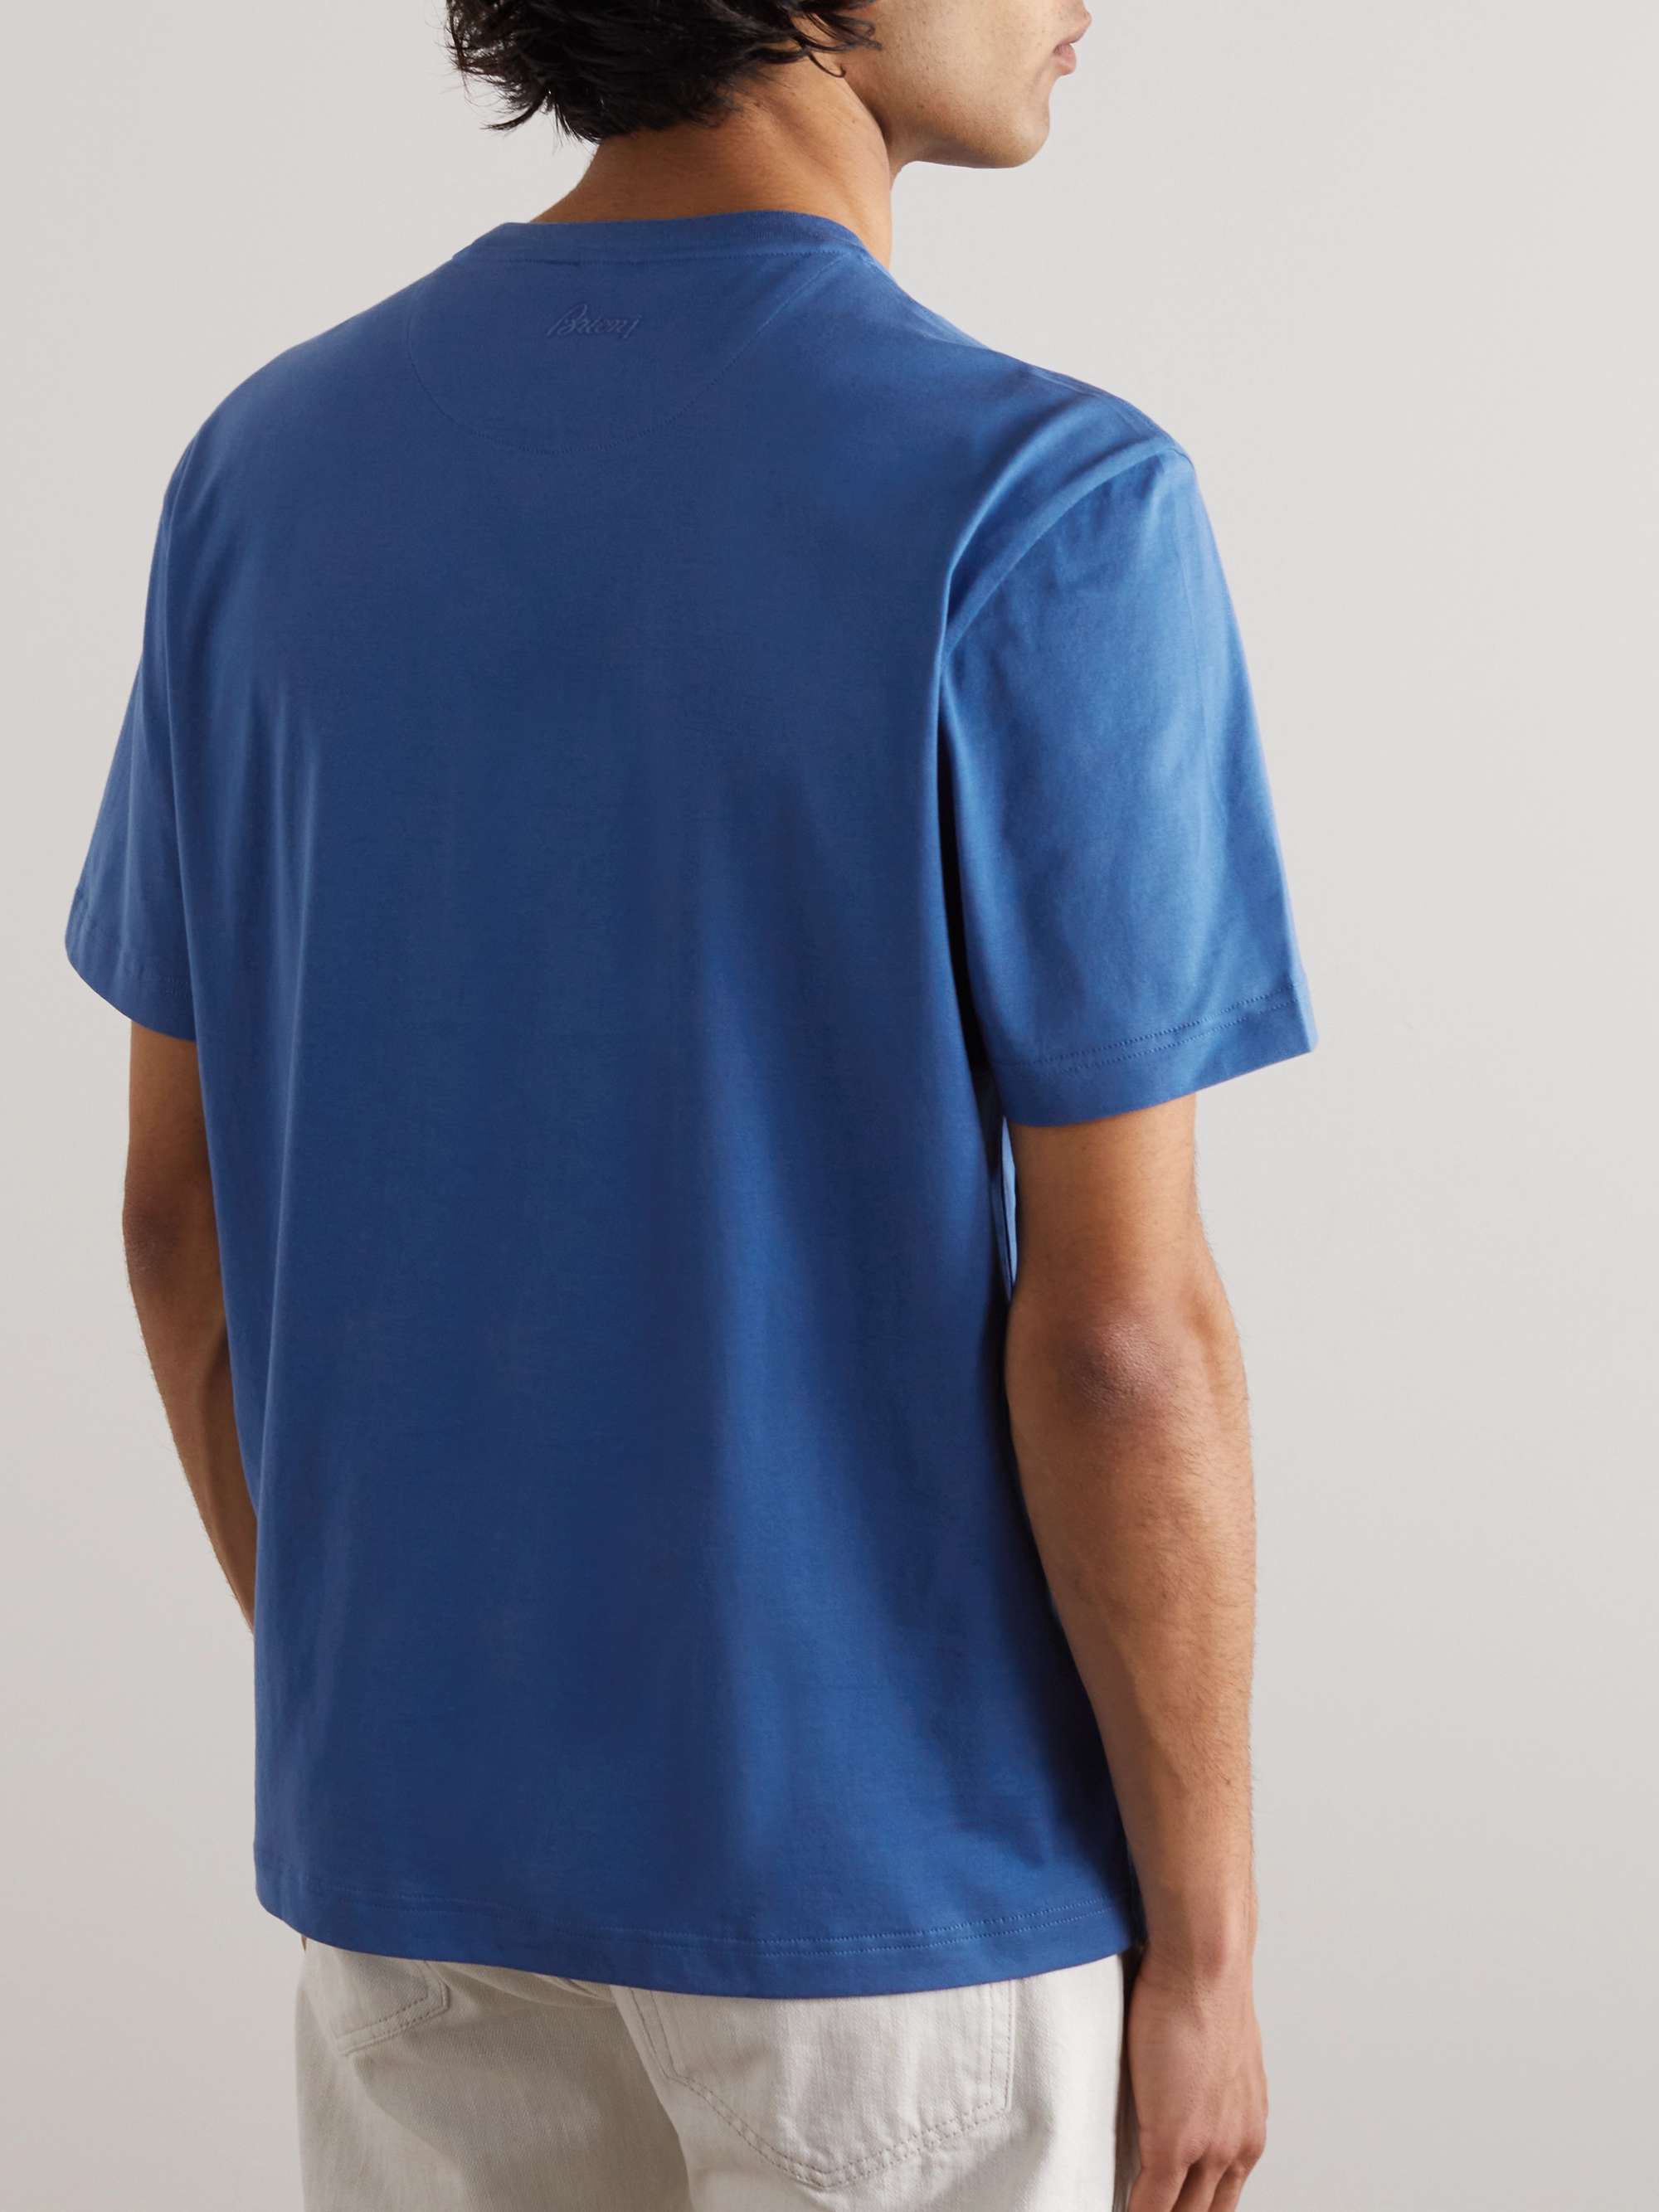 BRIONI Cotton-Jersey T-Shirt for Men | MR PORTER